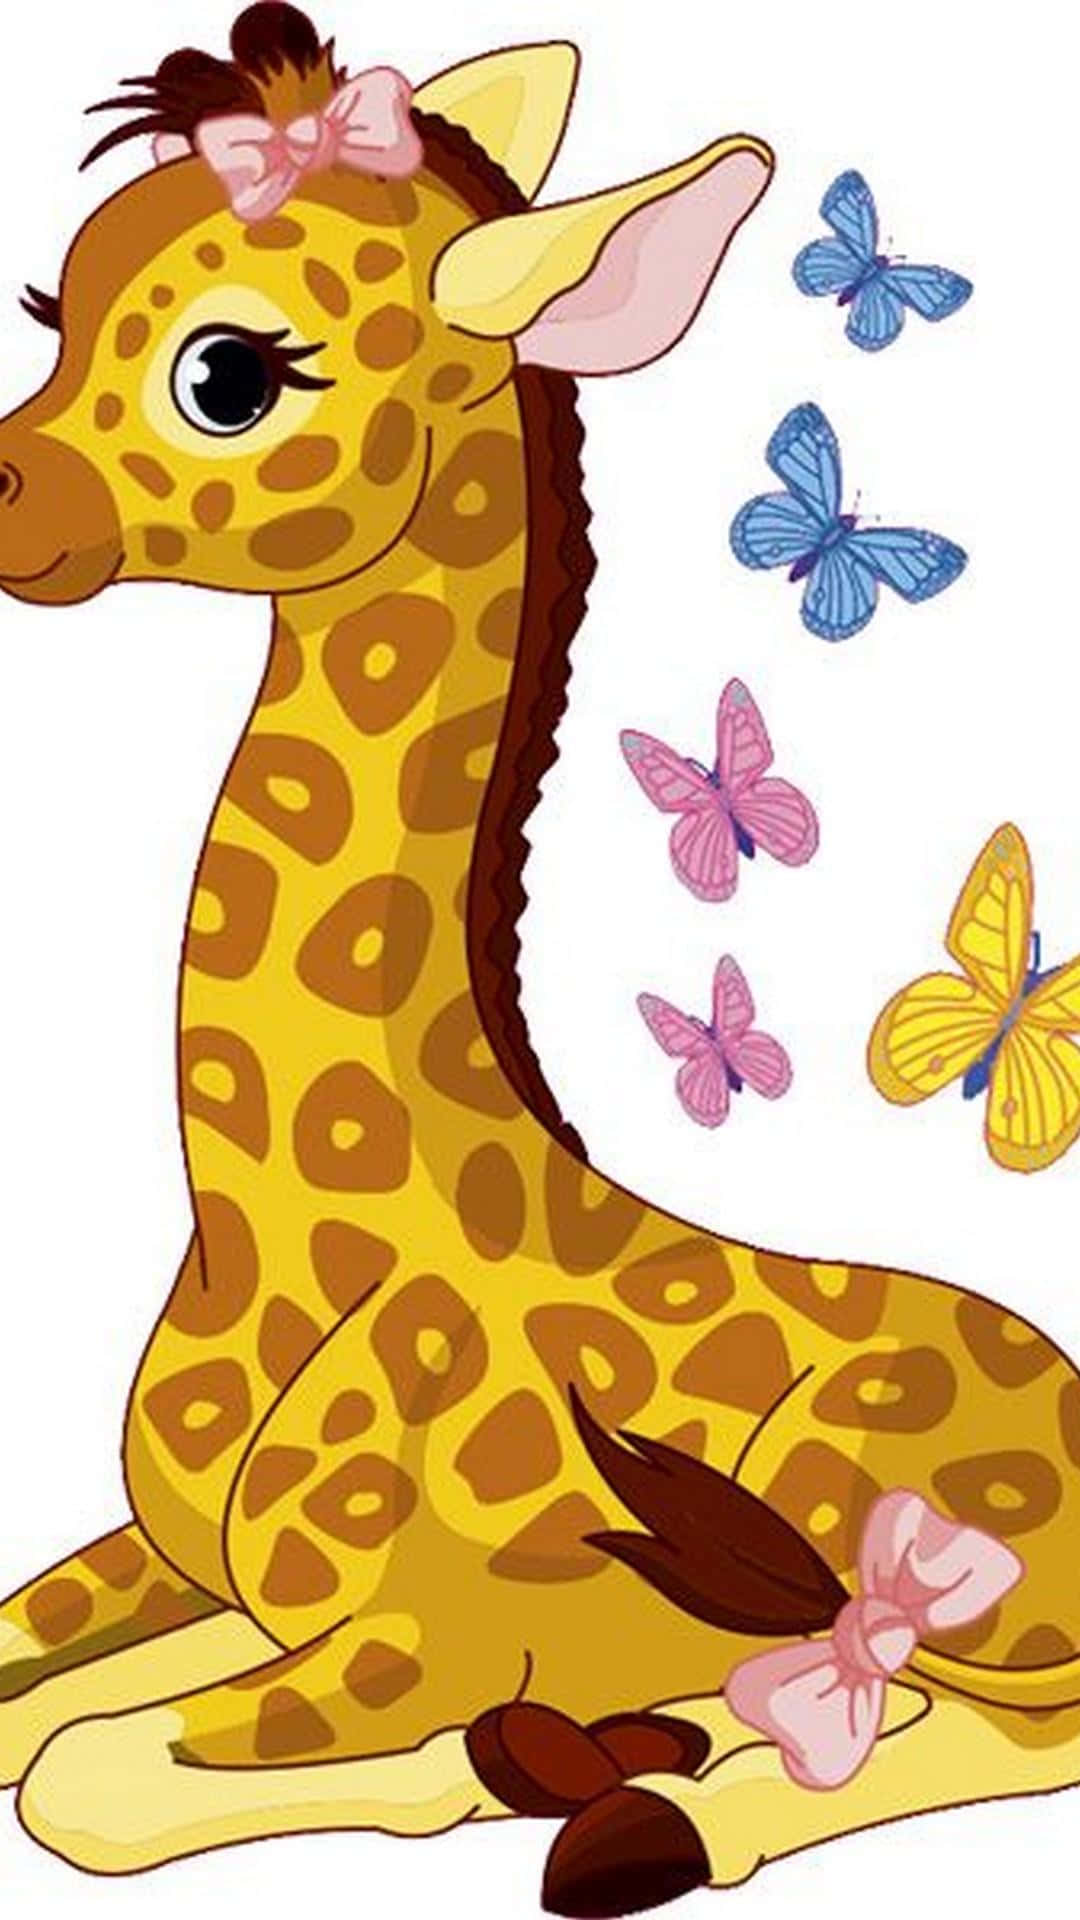 An Adorable Baby Giraffe Calf